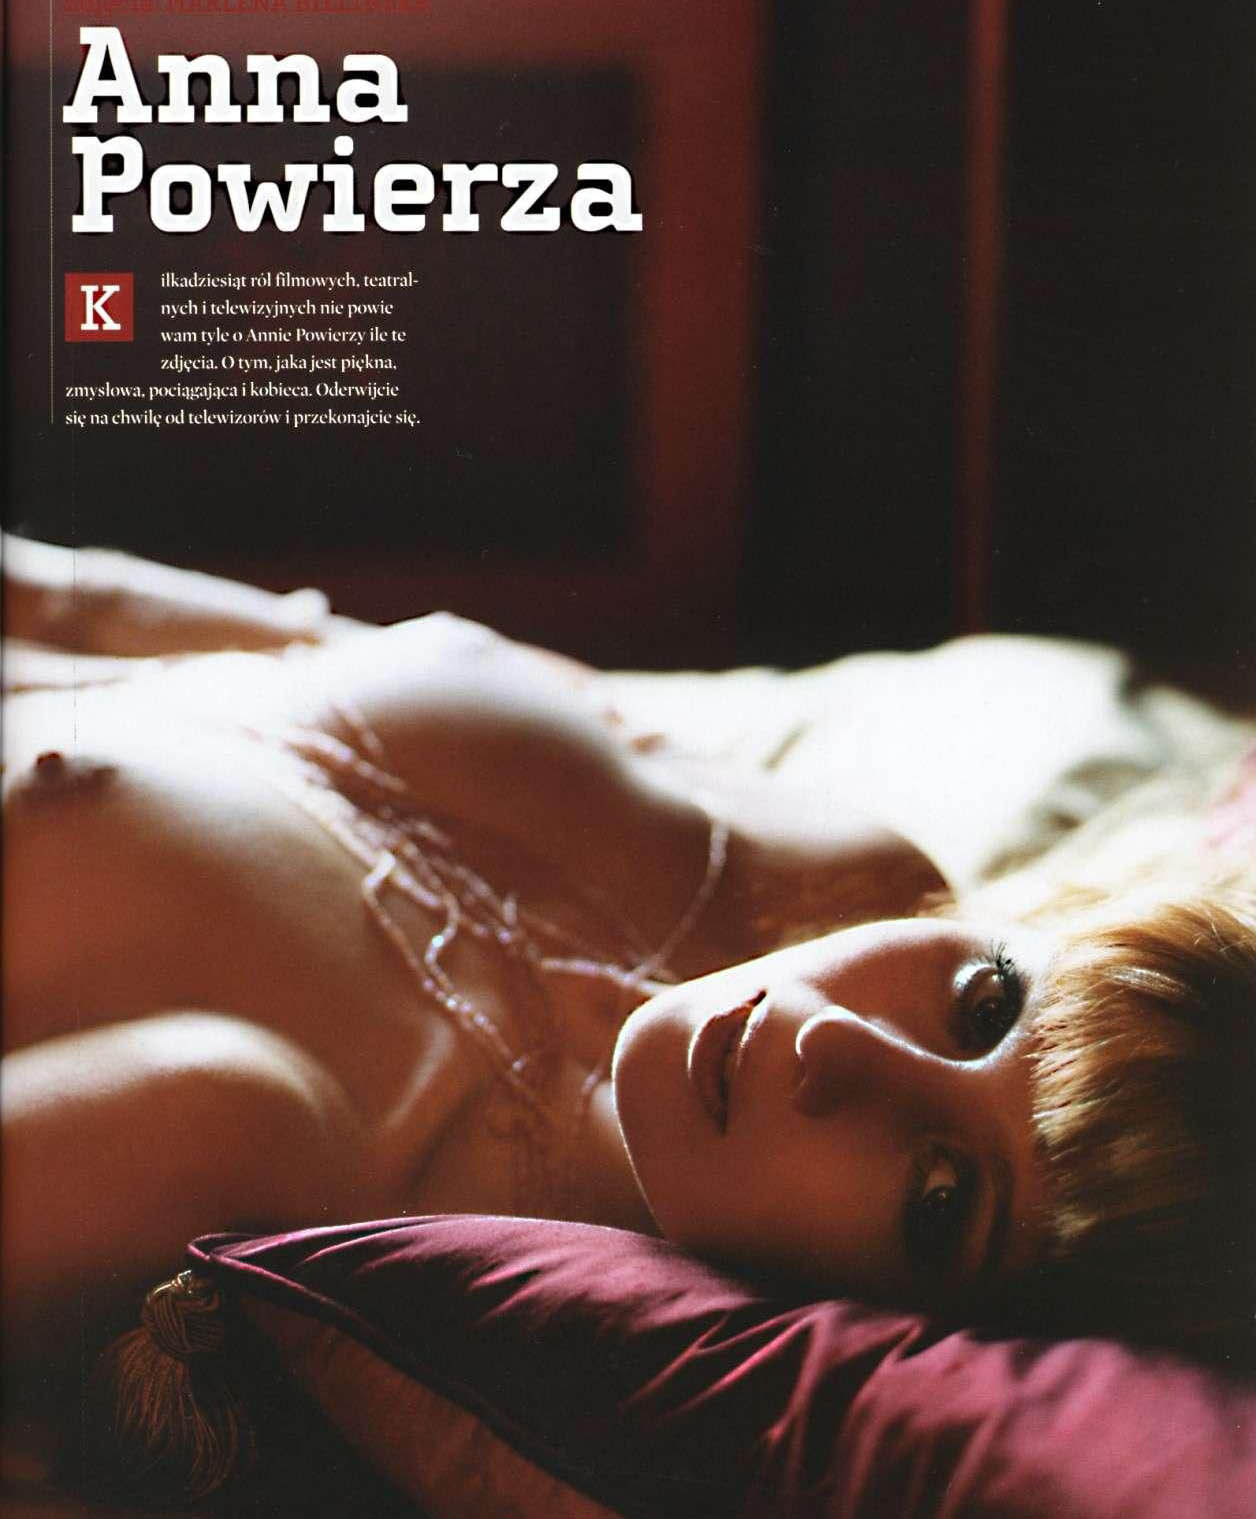 Anna Powierza nuda. Foto - 12